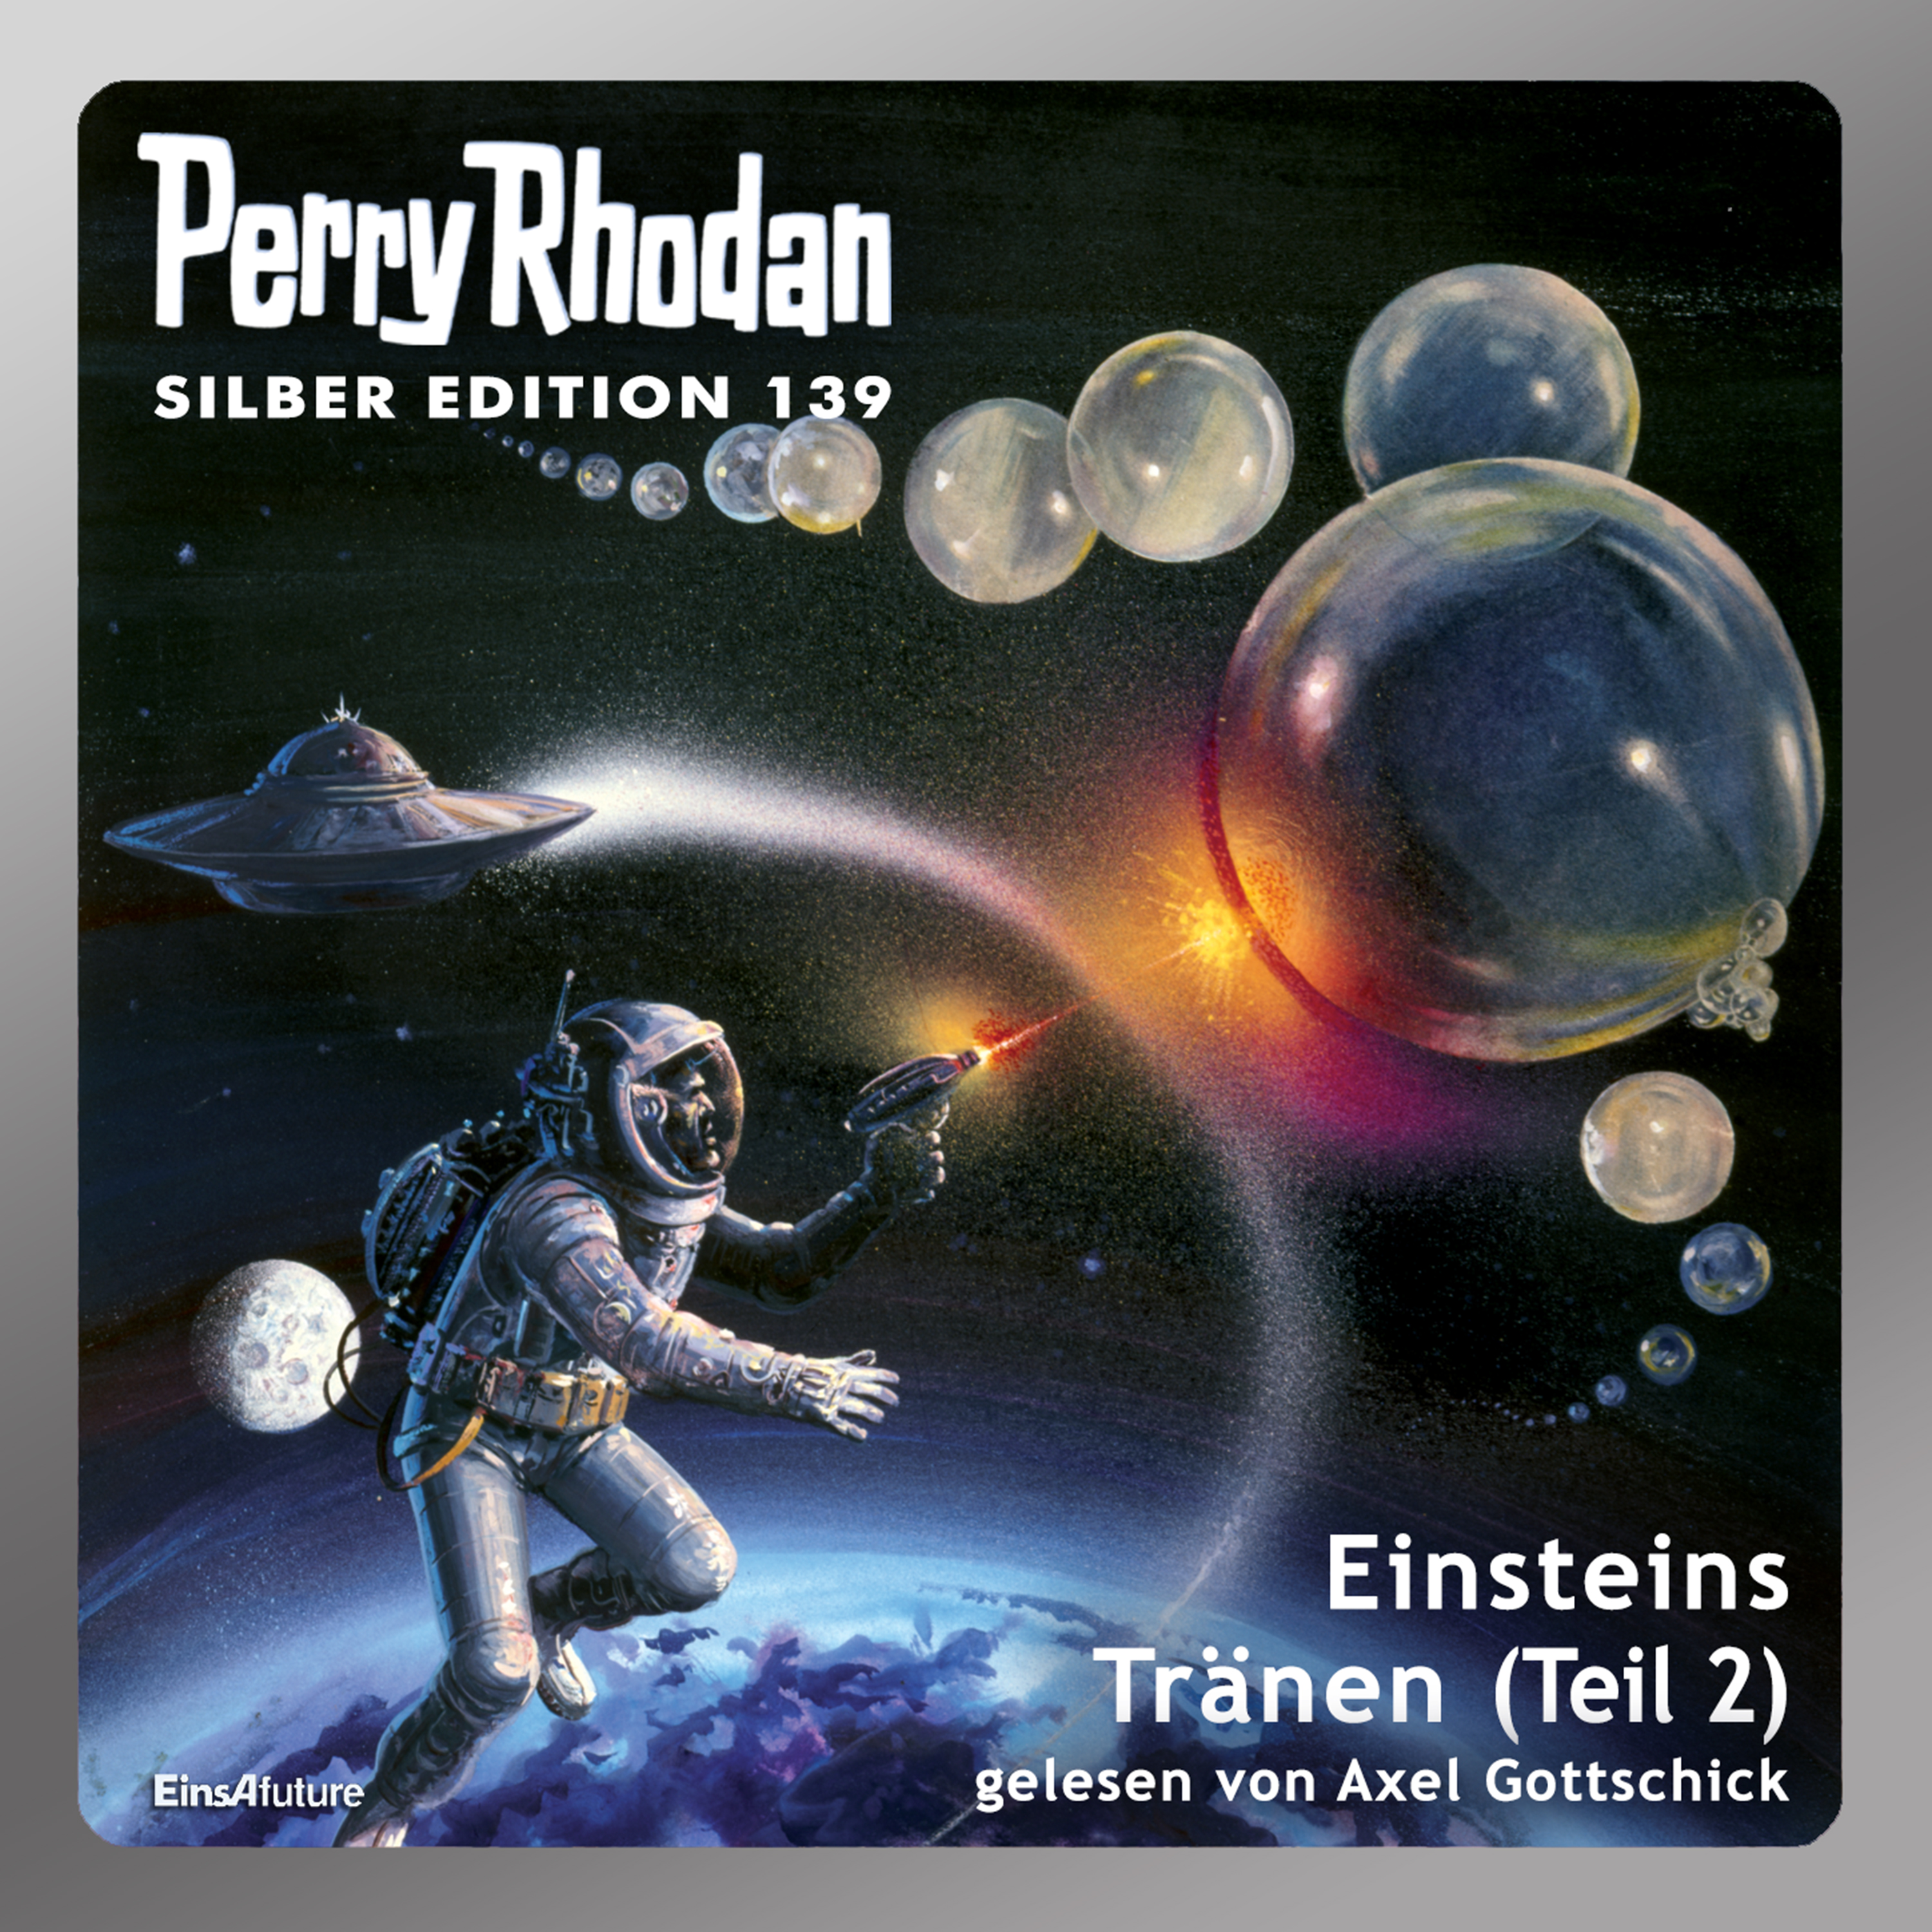 Perry Rhodan Silber Edition 139: Einsteins Tränen (Teil 2) (Download)